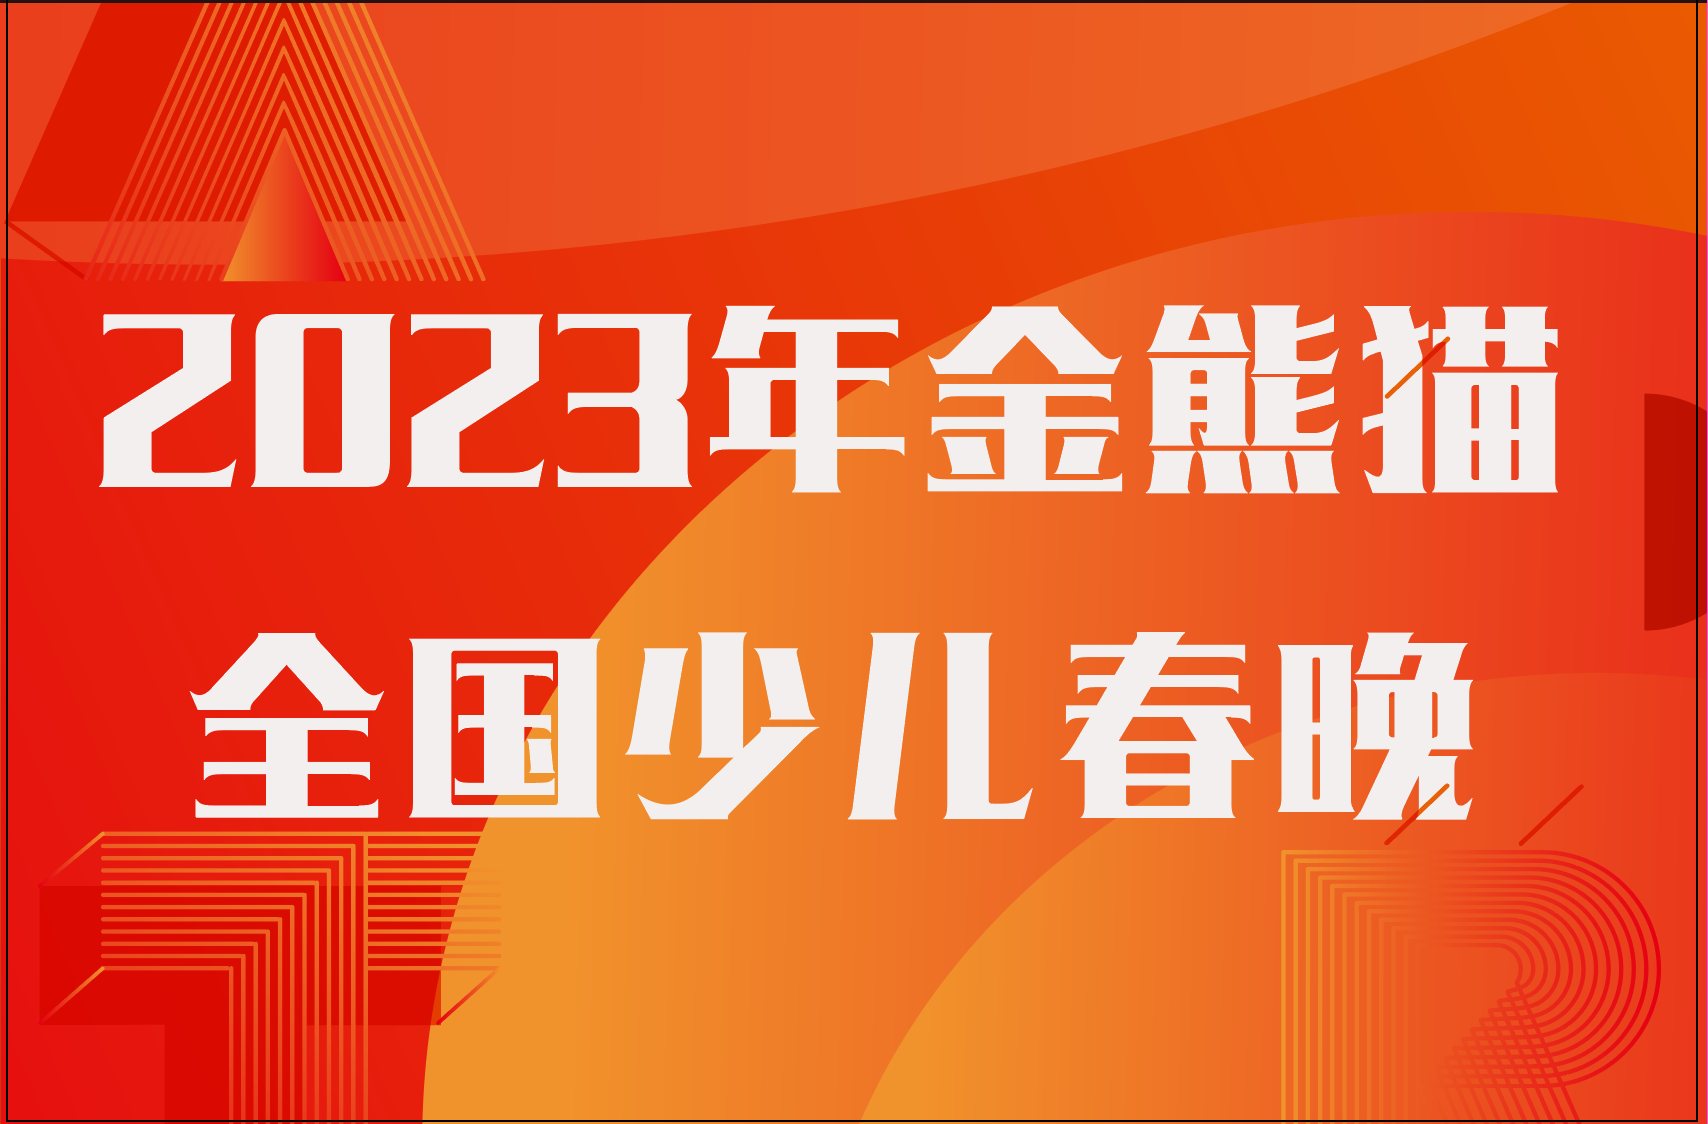 2023年四川广播电视台金熊猫全国少儿春晚